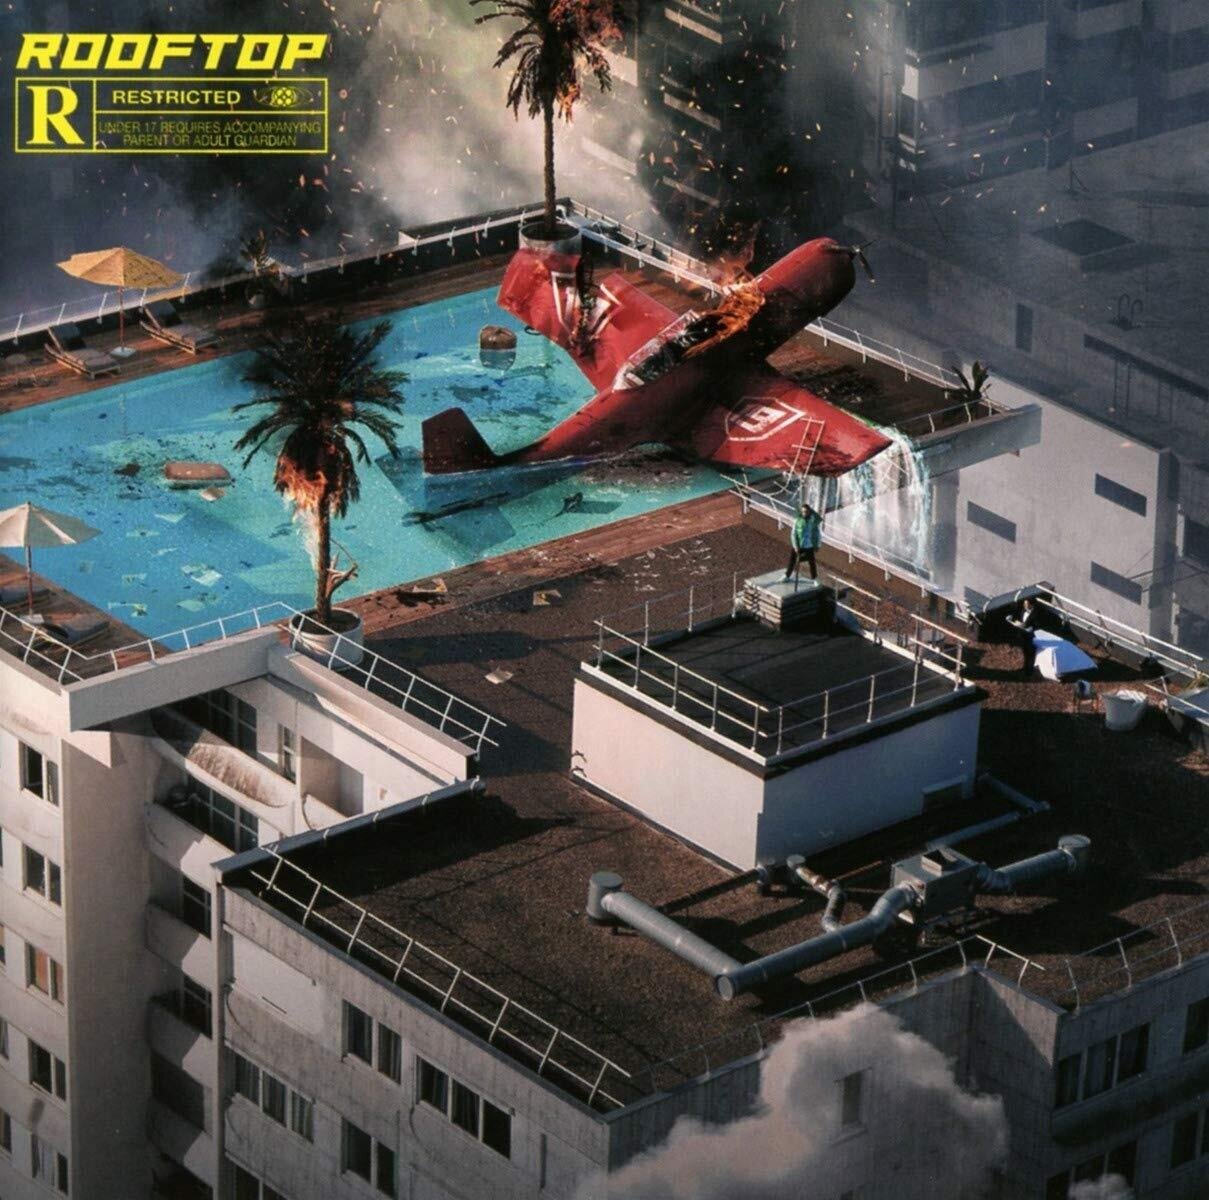 Sch - Rooftop (2019) CD